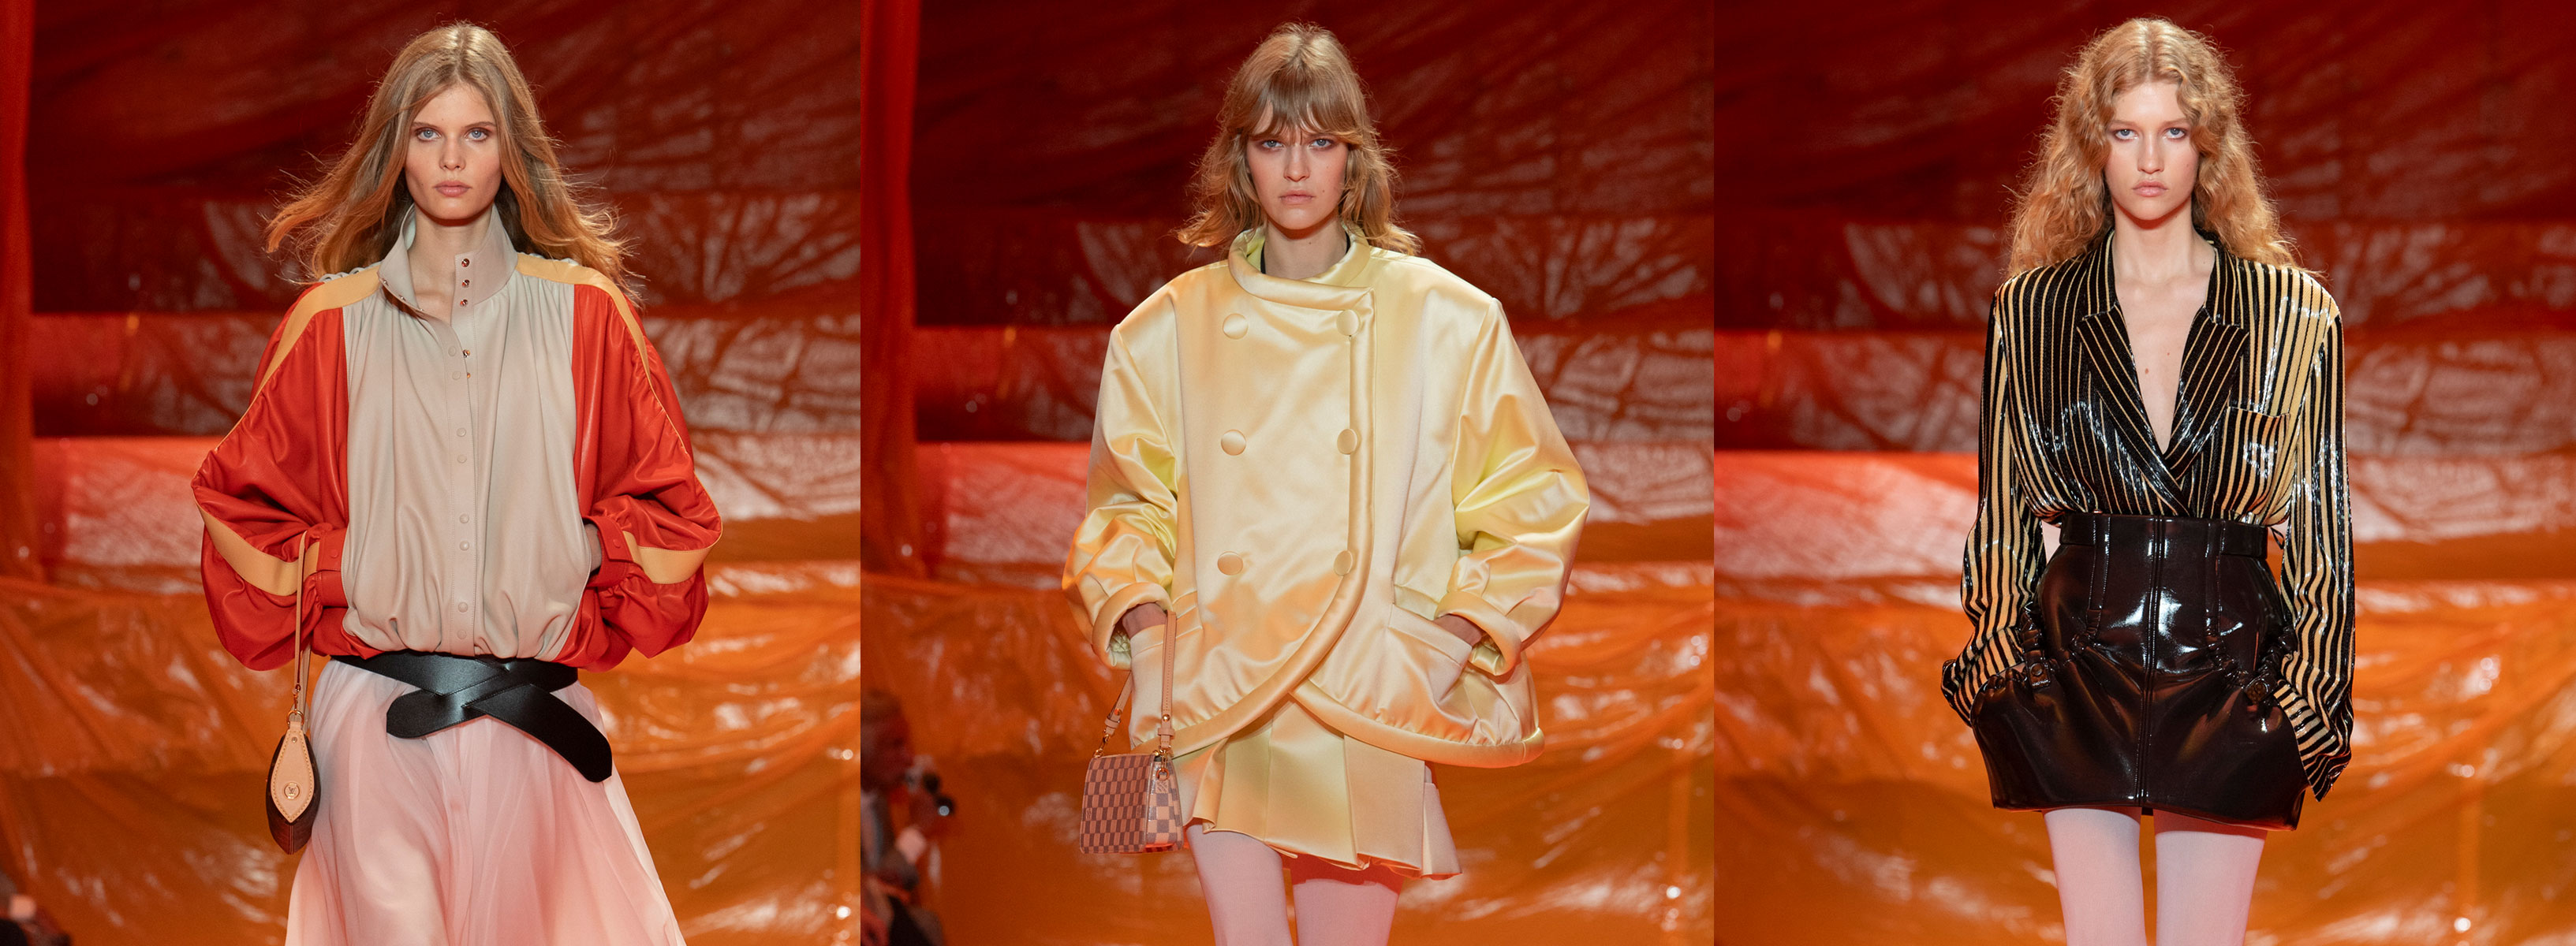  Троянди на сукнях, сиві Хелен Міррен та Енді МакДауелл на подіумі та прощальна колекція Сари Бартон для Alexander McQueen: подробиці Paris Fashion Week - фото 7